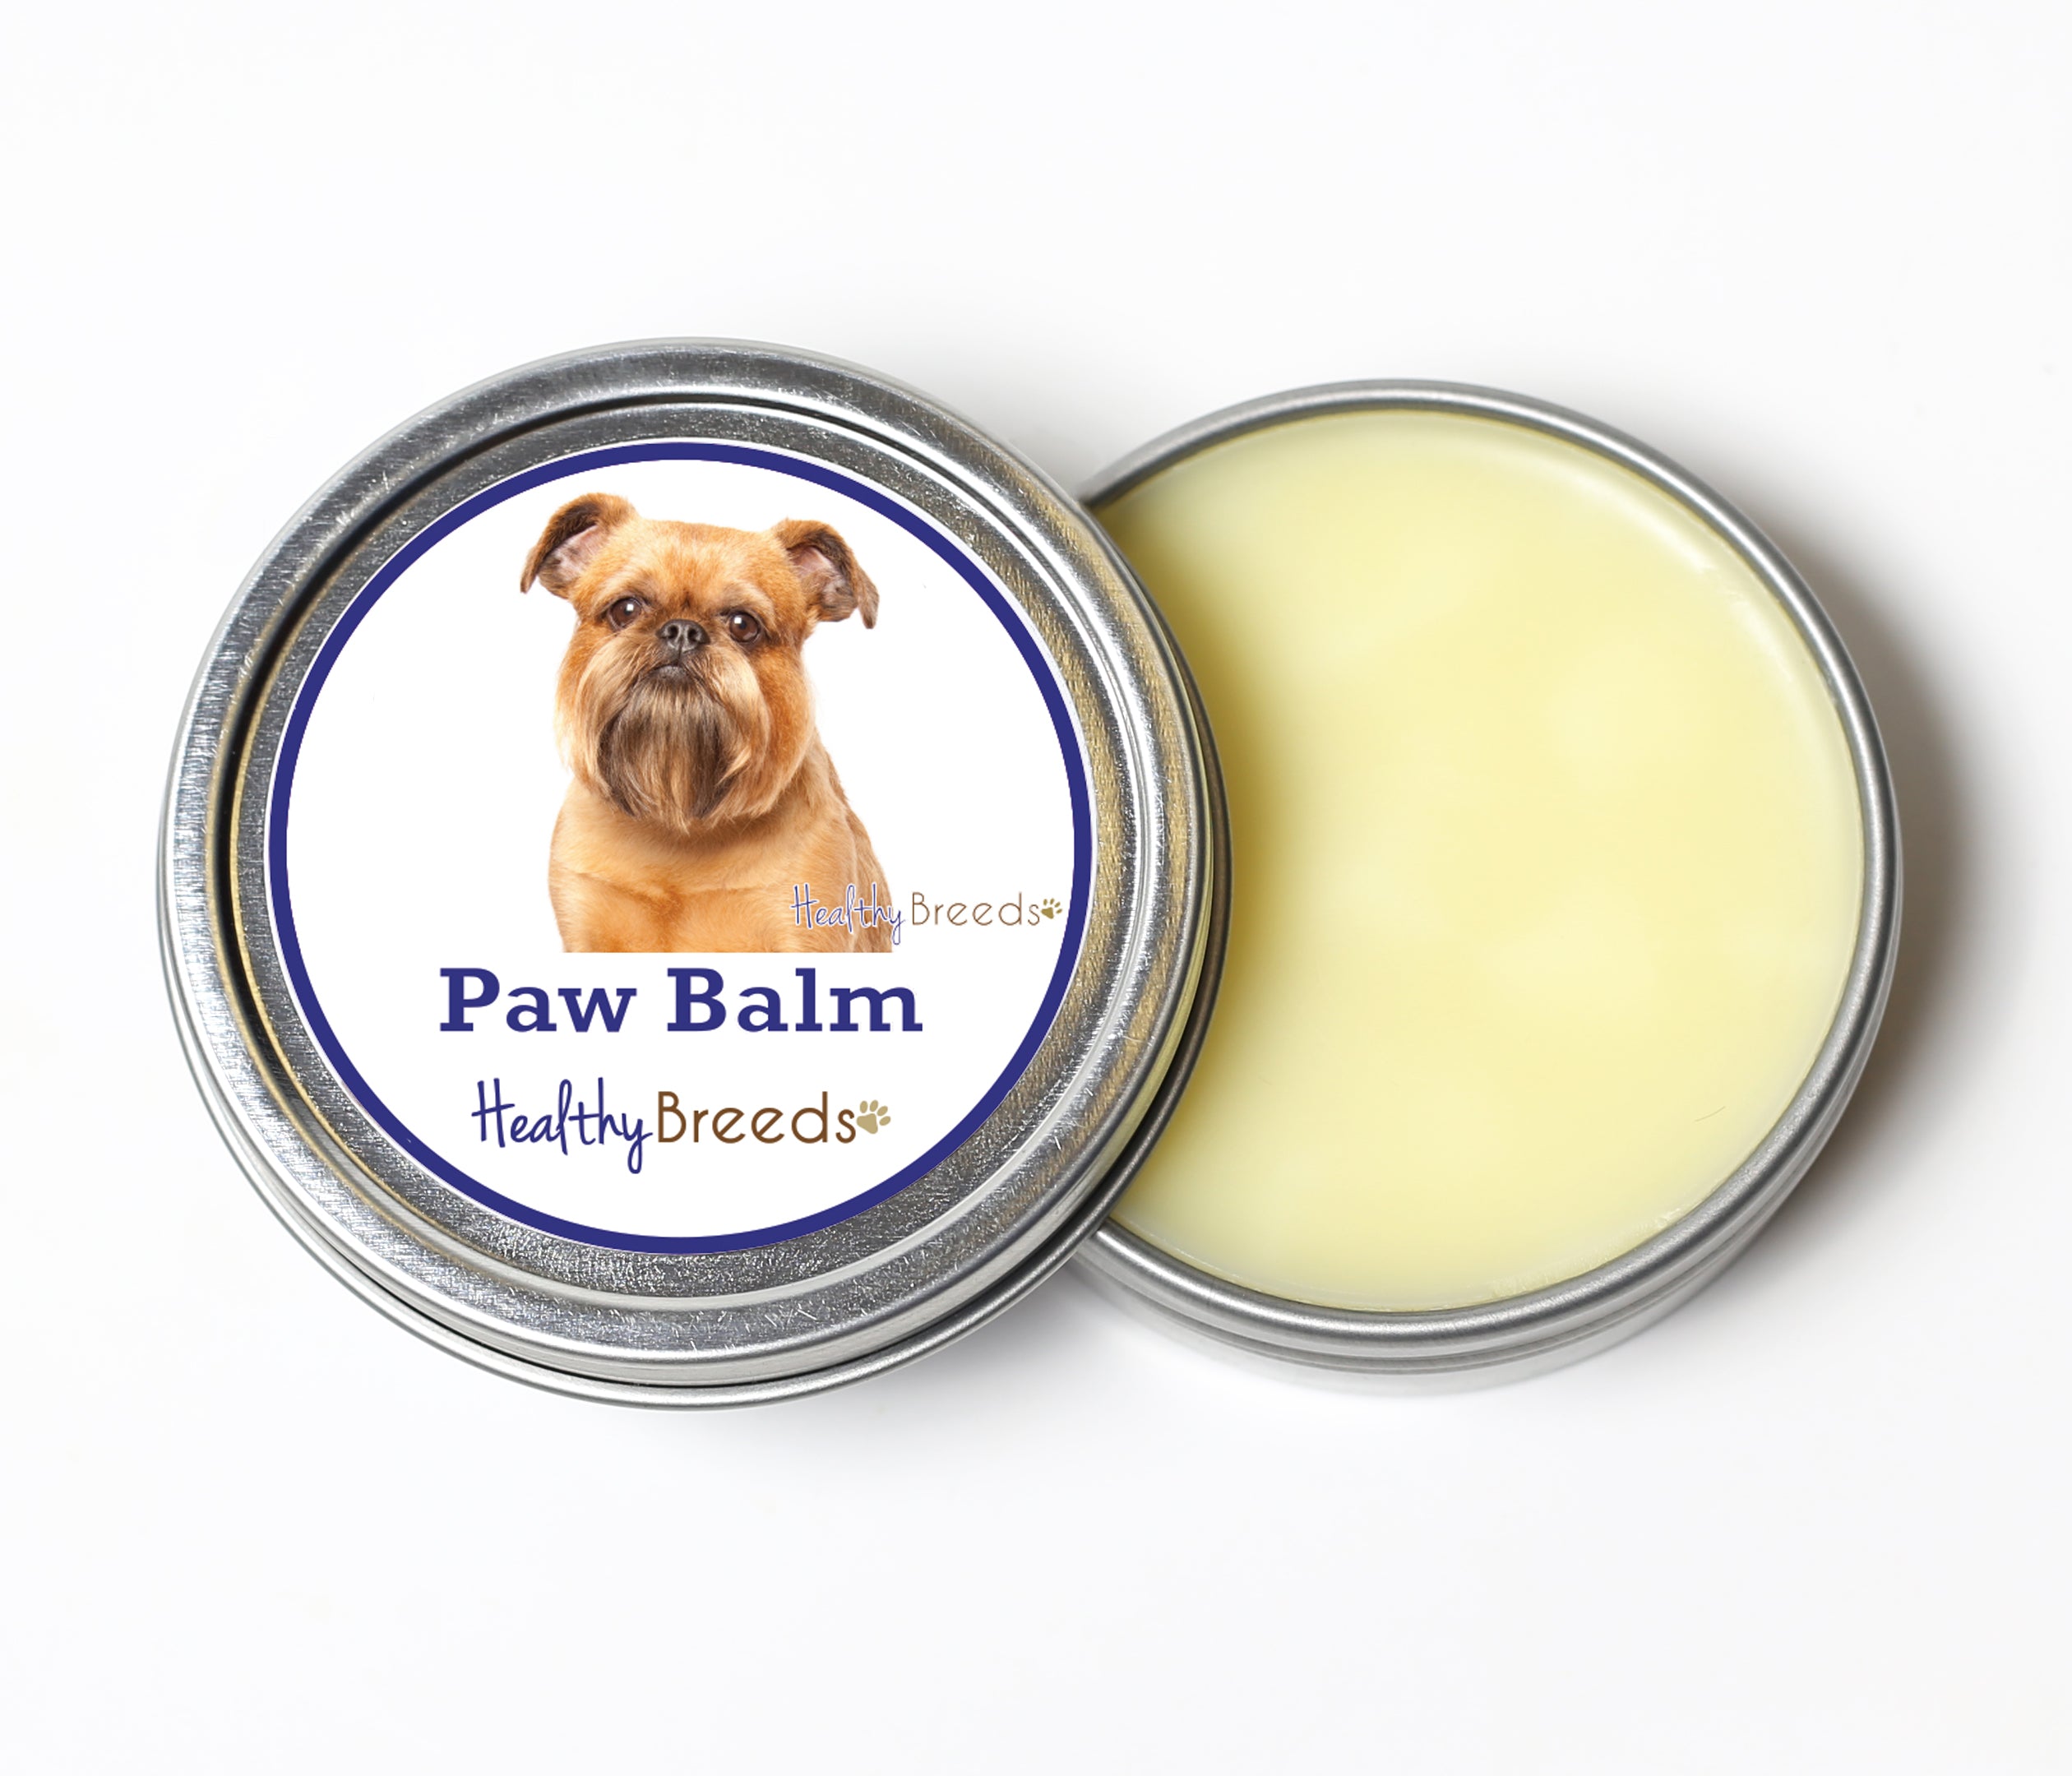 Brussels Griffon Dog Paw Balm 2 oz